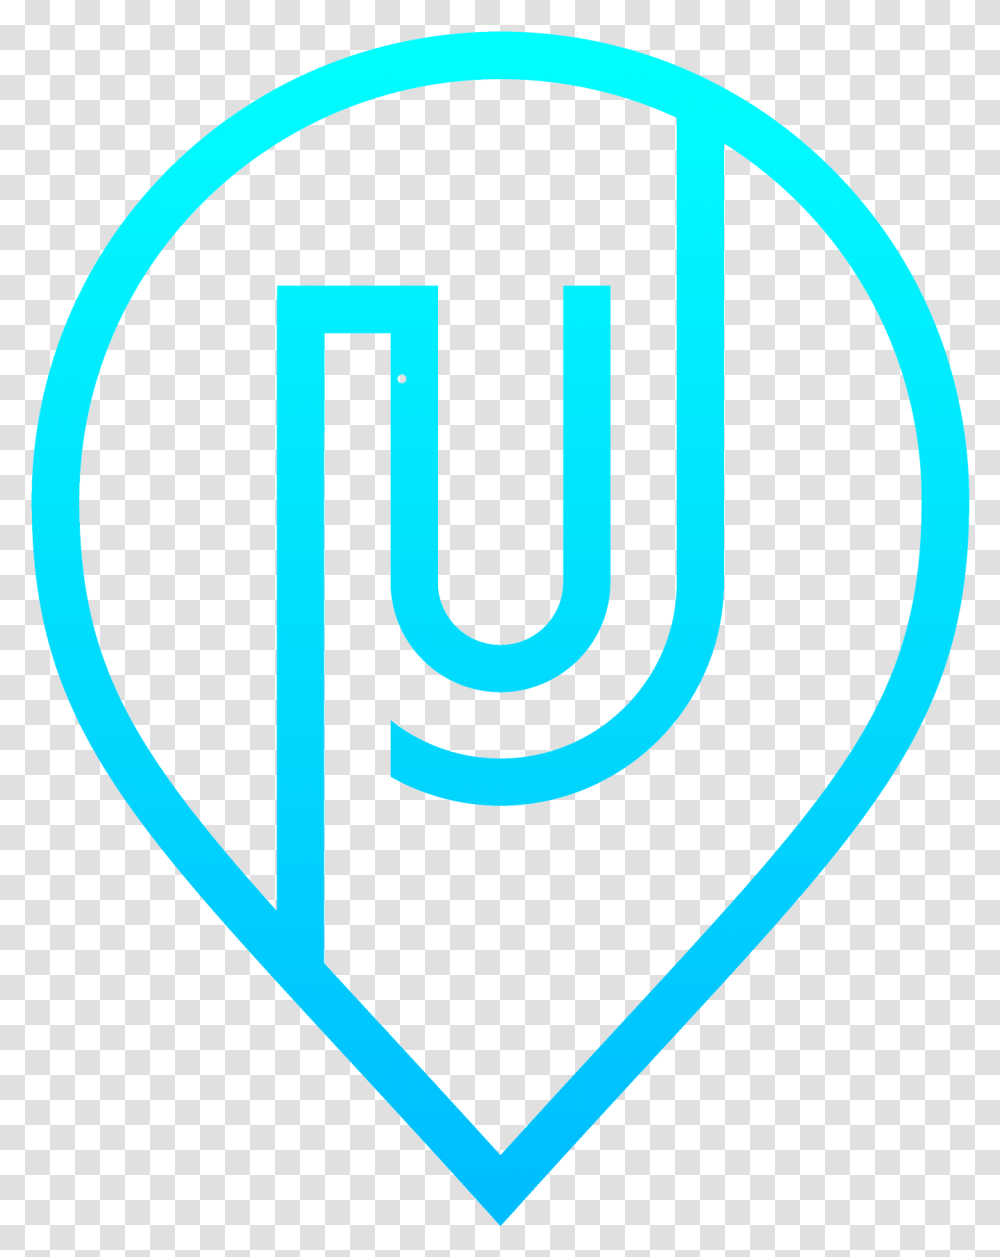 U Real Estate Emblem, Word, Logo Transparent Png